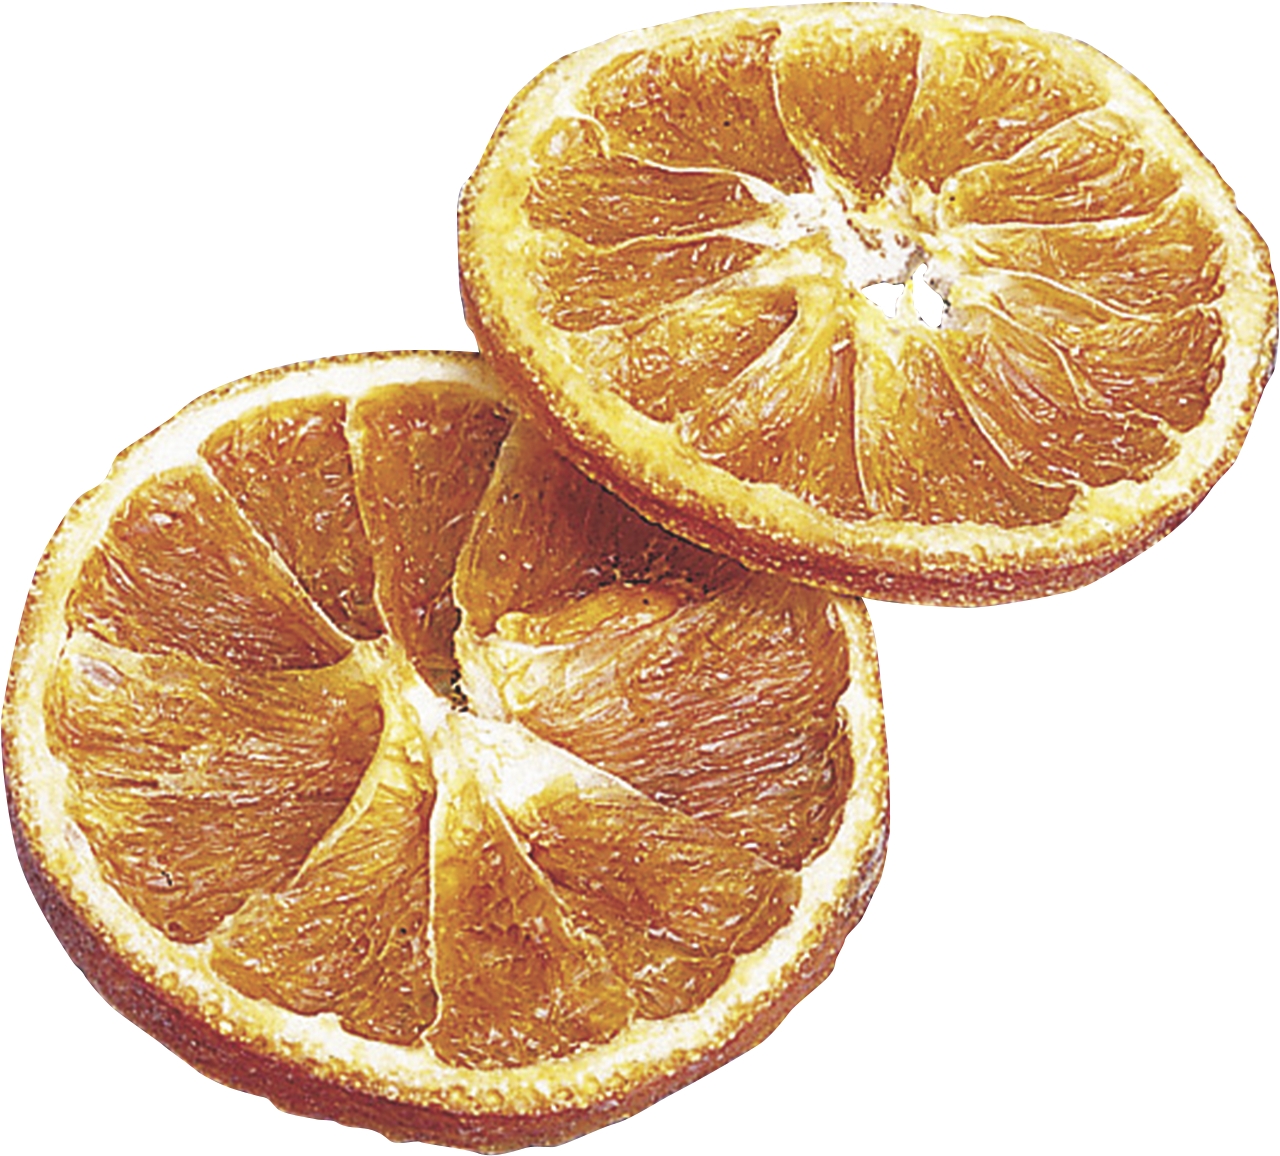 Orangenscheiben 20 Stück Naturmaterial 